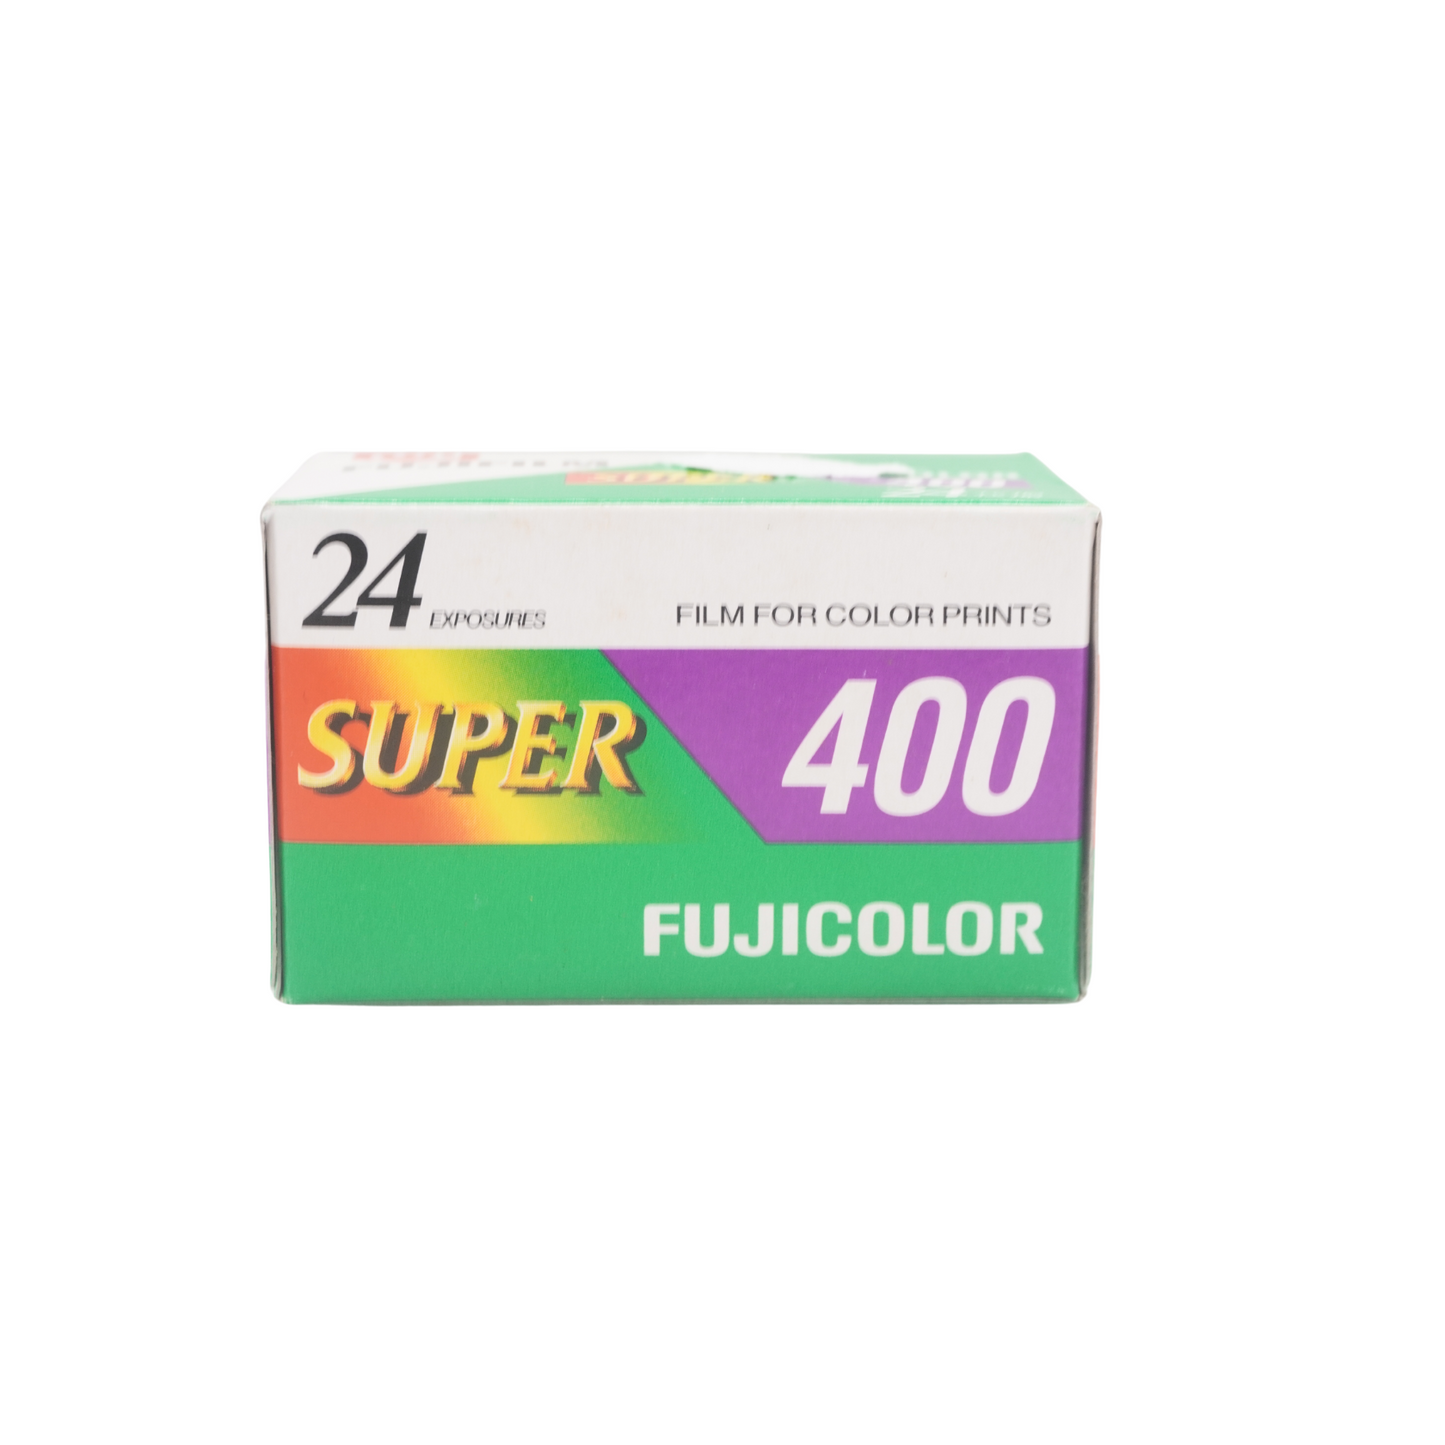 Fujifilm Super 400 24exp Expired Film (2000/08)